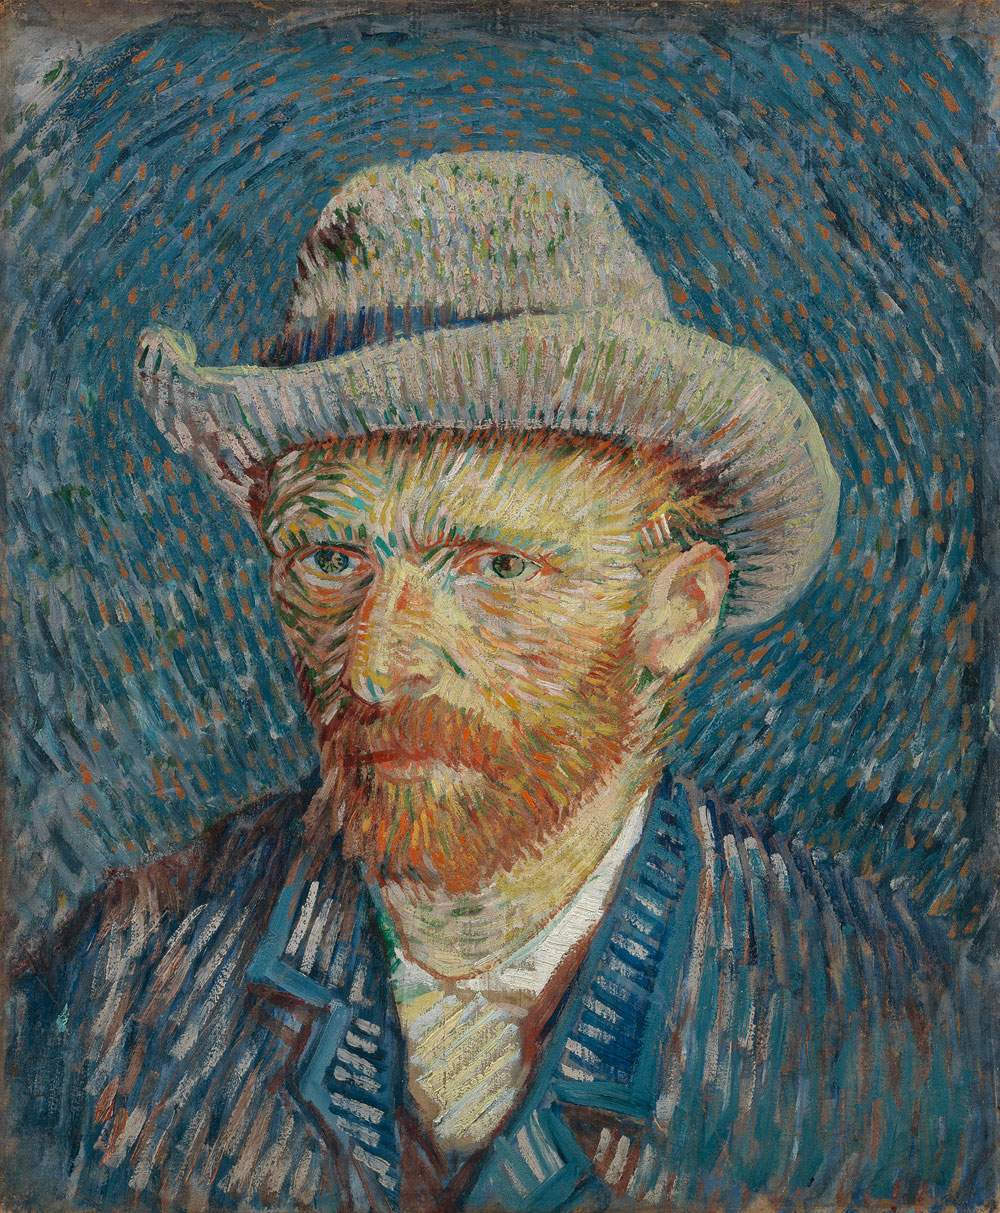 Goldin torna tra il 2020 e il 2022 con un progetto che porterà a Padova van Gogh, i vedutisti e gli impressionisti